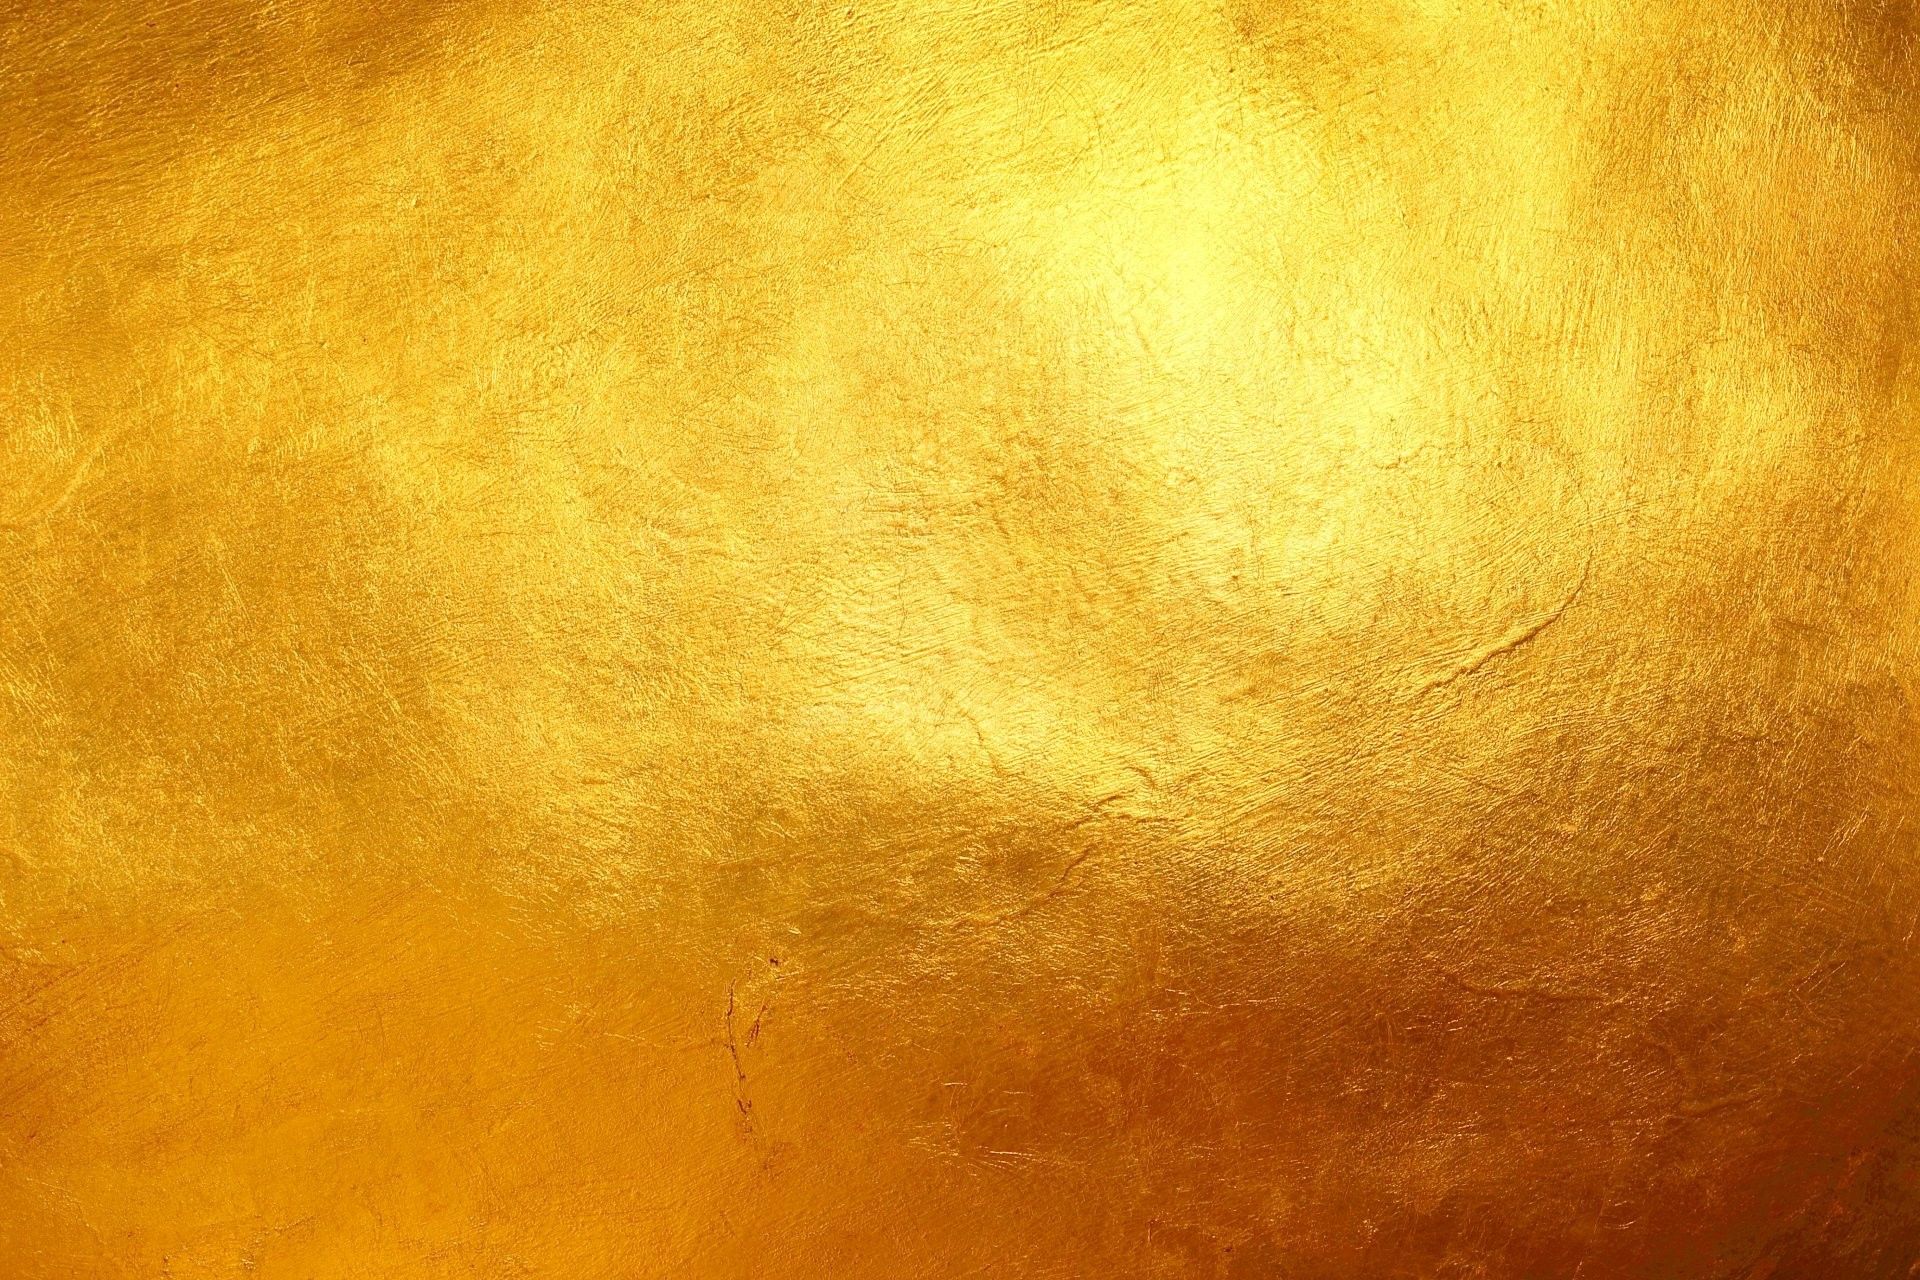 Tải ngay hình nền vàng 1920x1280 miễn phí để cùng tận hưởng vẻ đẹp rực rỡ của màu vàng trên màn hình của bạn. Hình nền này sẽ mang đến sự mới lạ và độc đáo cho máy tính của bạn, đồng thời sẽ giúp tô điểm cho không gian làm việc của bạn trở nên sáng tạo hơn.